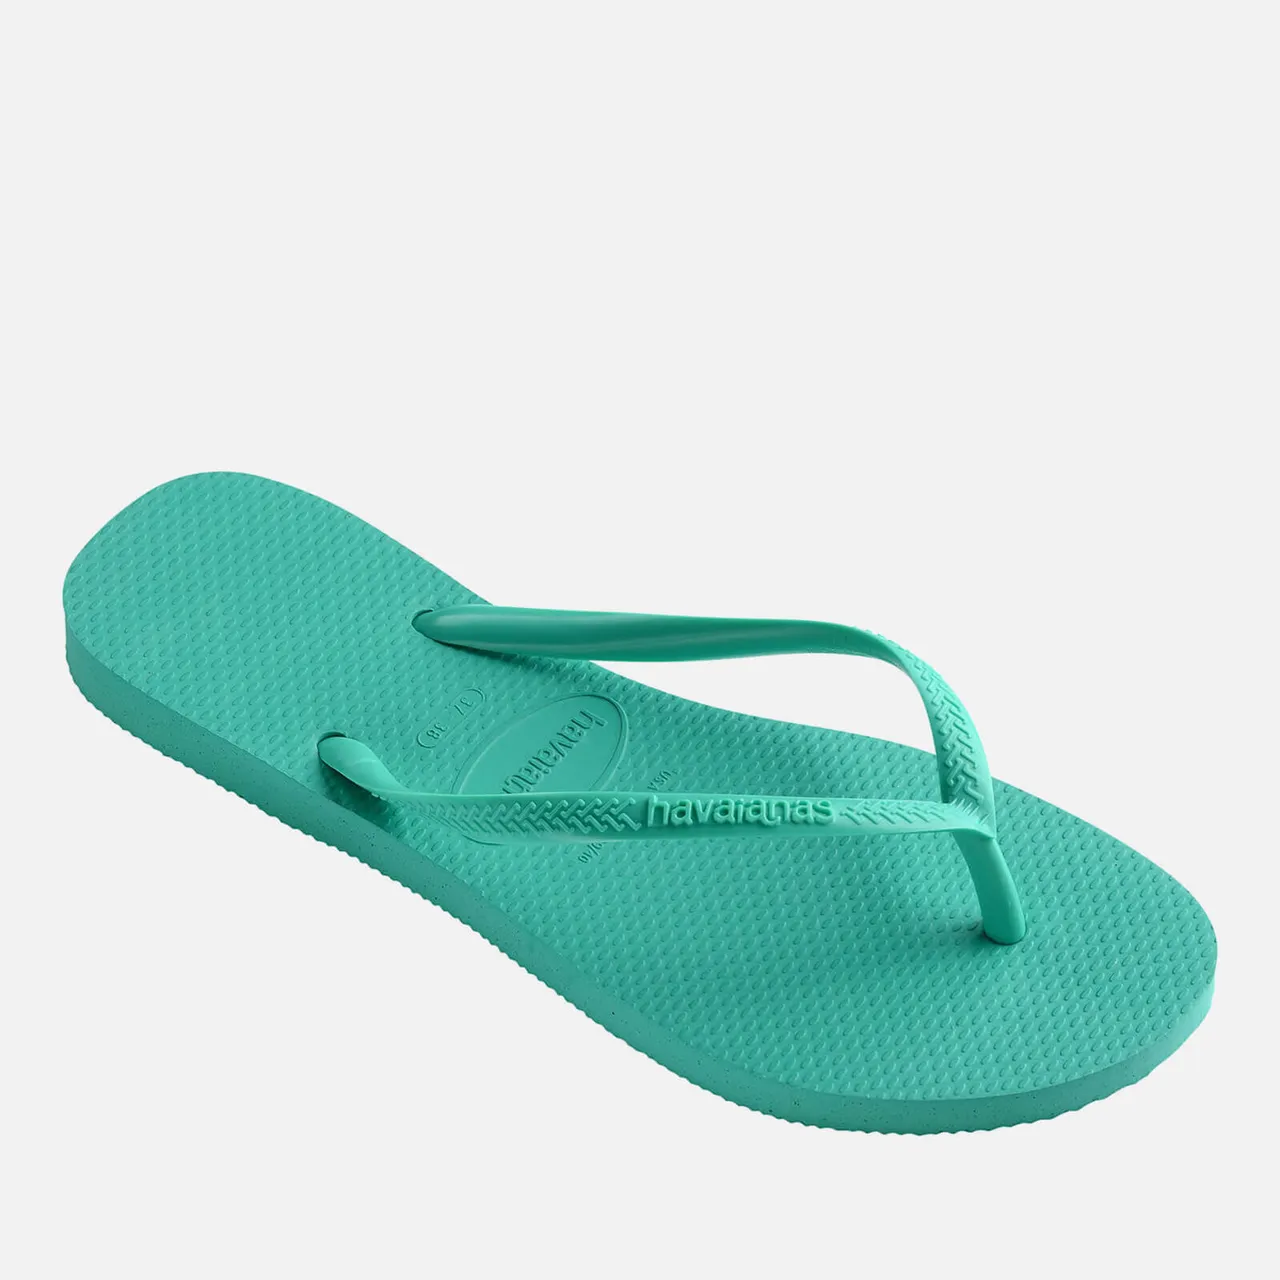 Havaianas Slim Rubber Flip Flops - UK